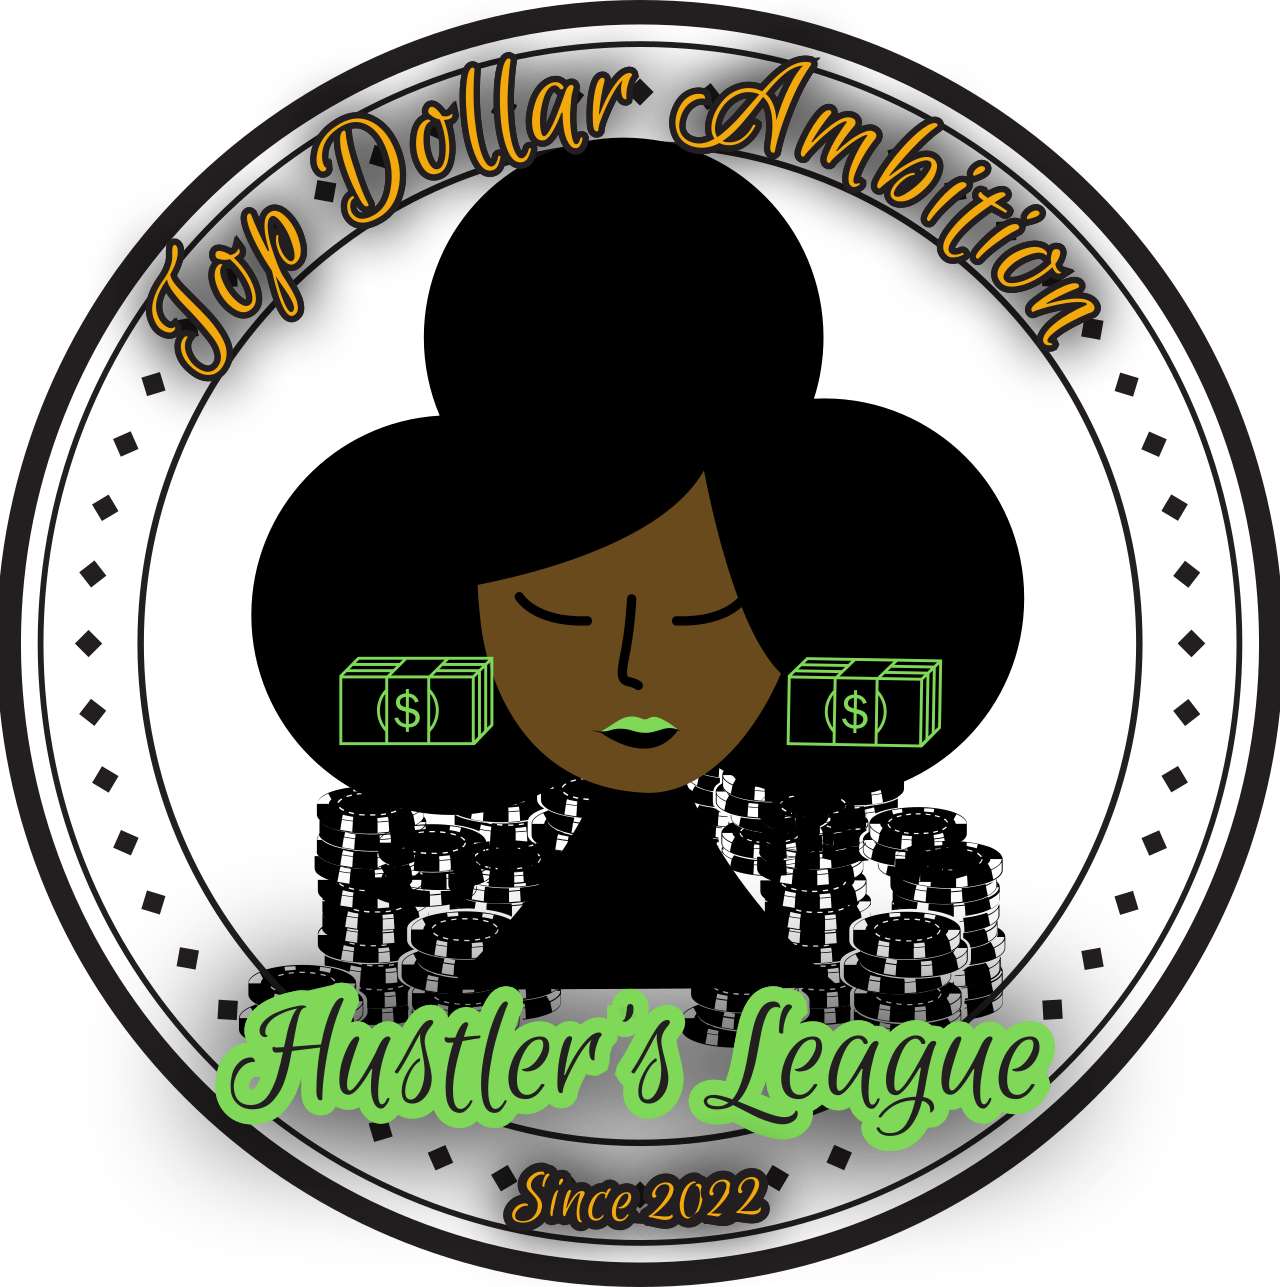 Hustle League's web page